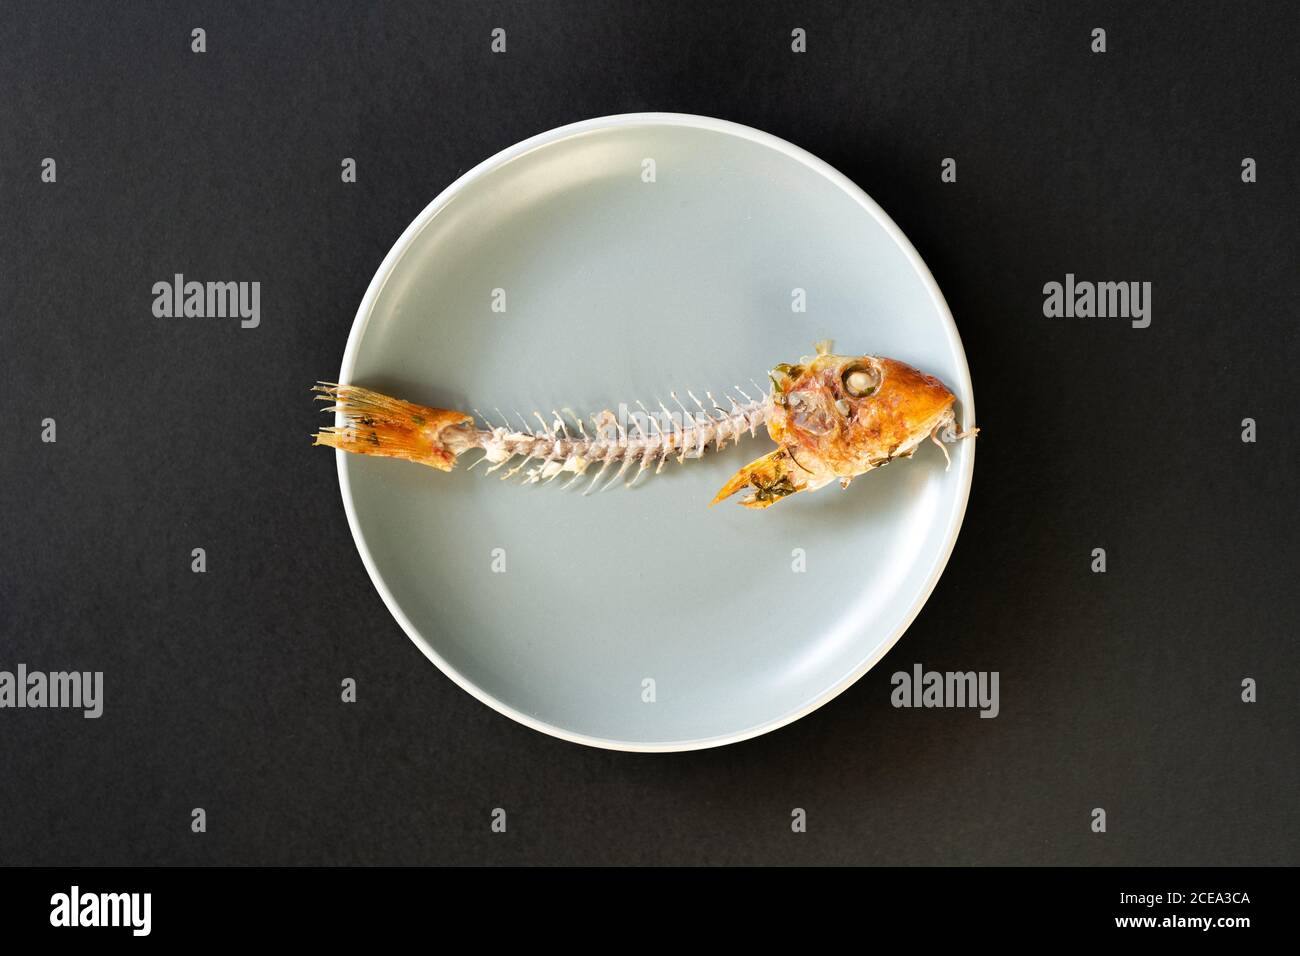 Skelett von lecker verzehrten Fisch auf Keramikplatte liegend Schwarzer Hintergrund Stockfoto